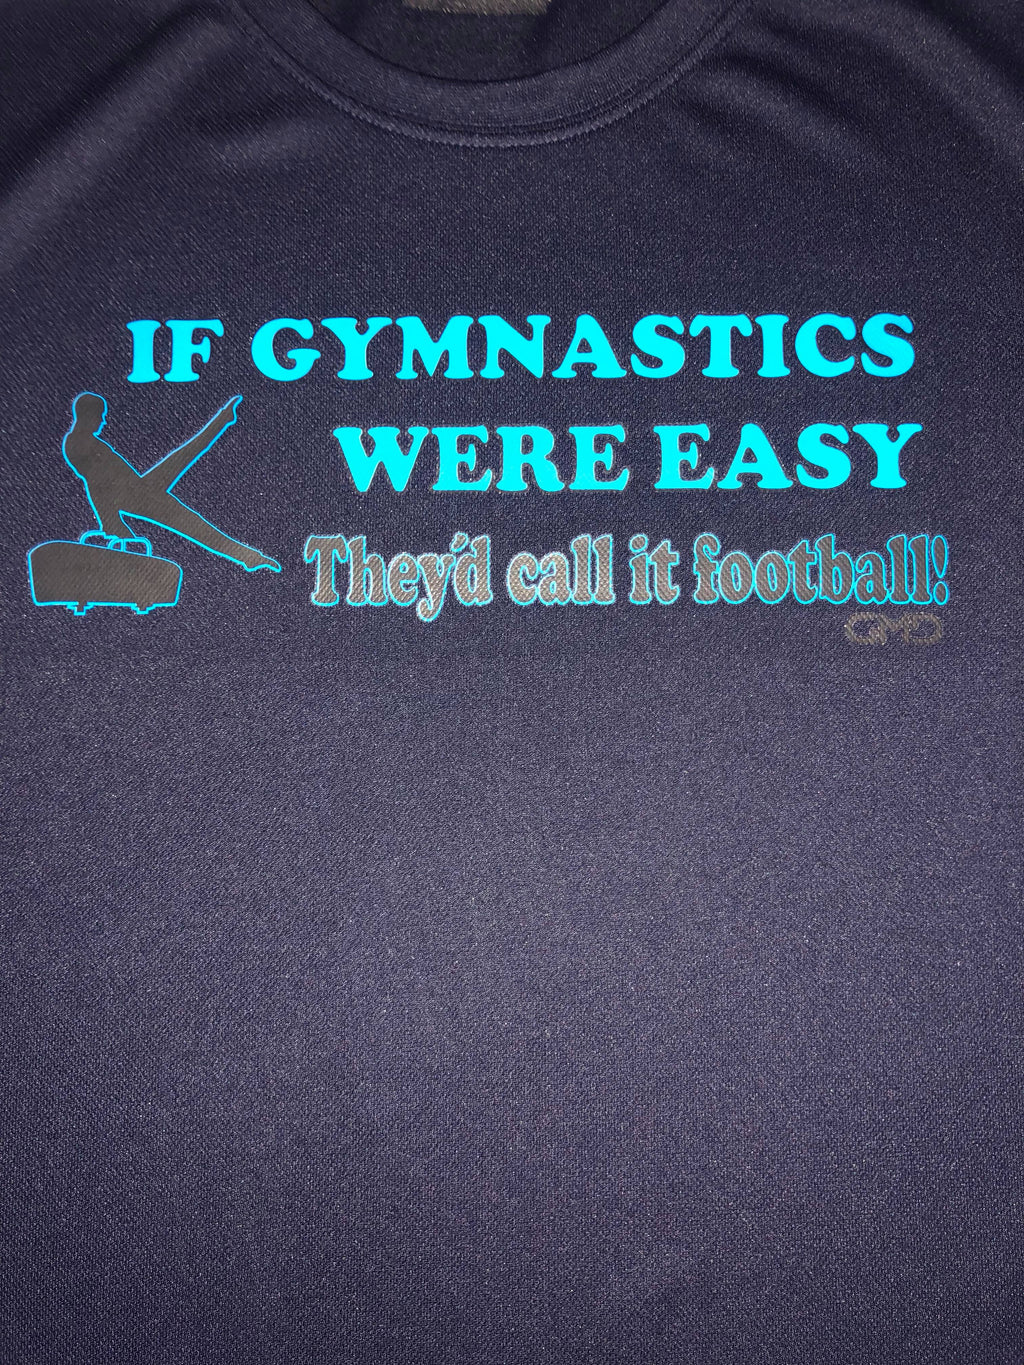 gymnastics sayings for t shirts